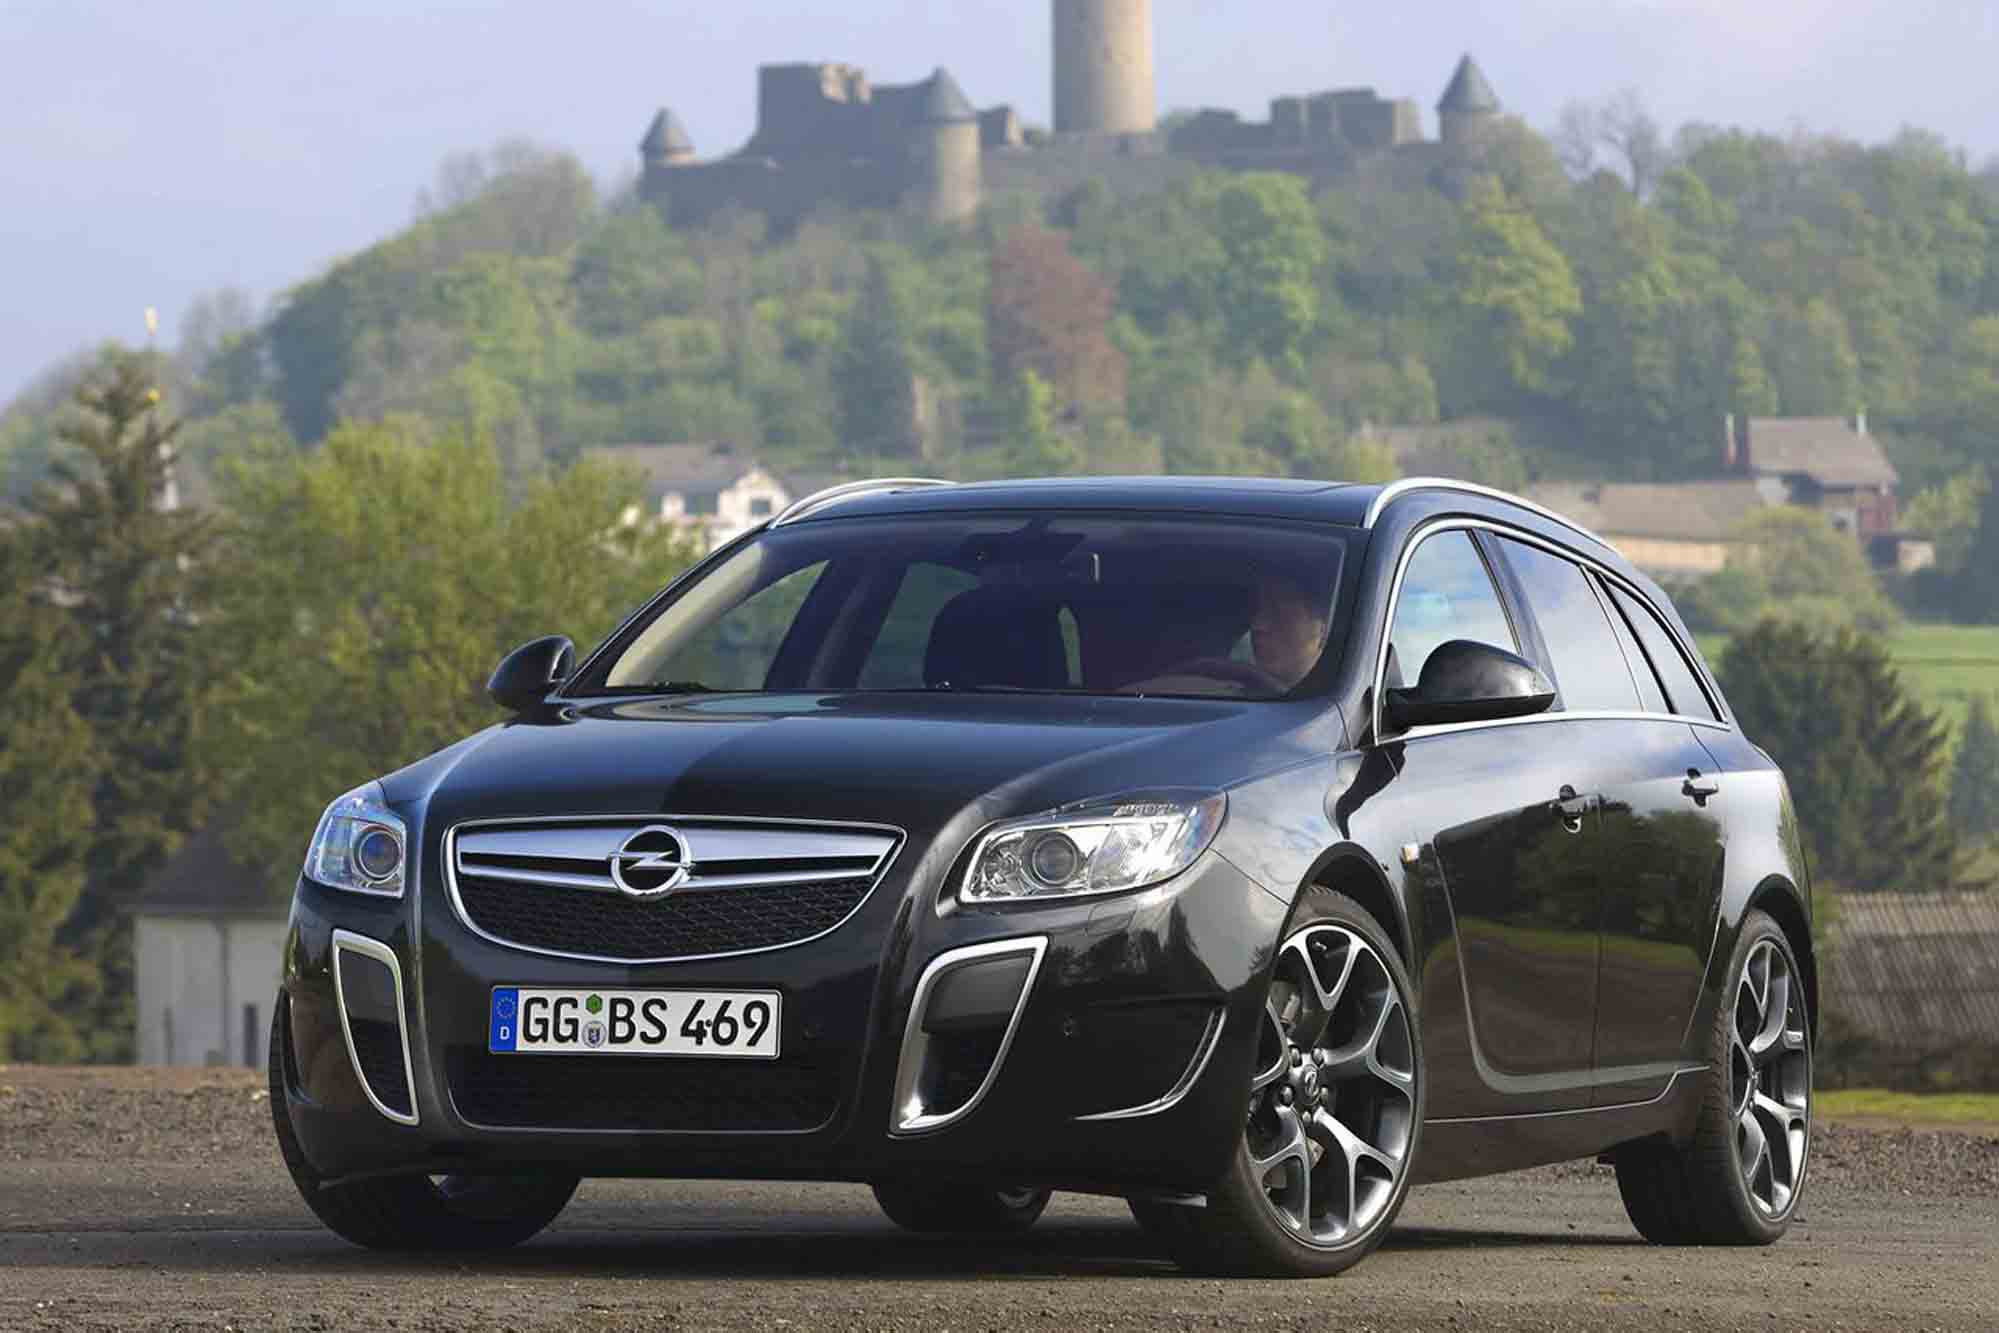 Image principale de l'actu: Opel insignia opc la boite auto 